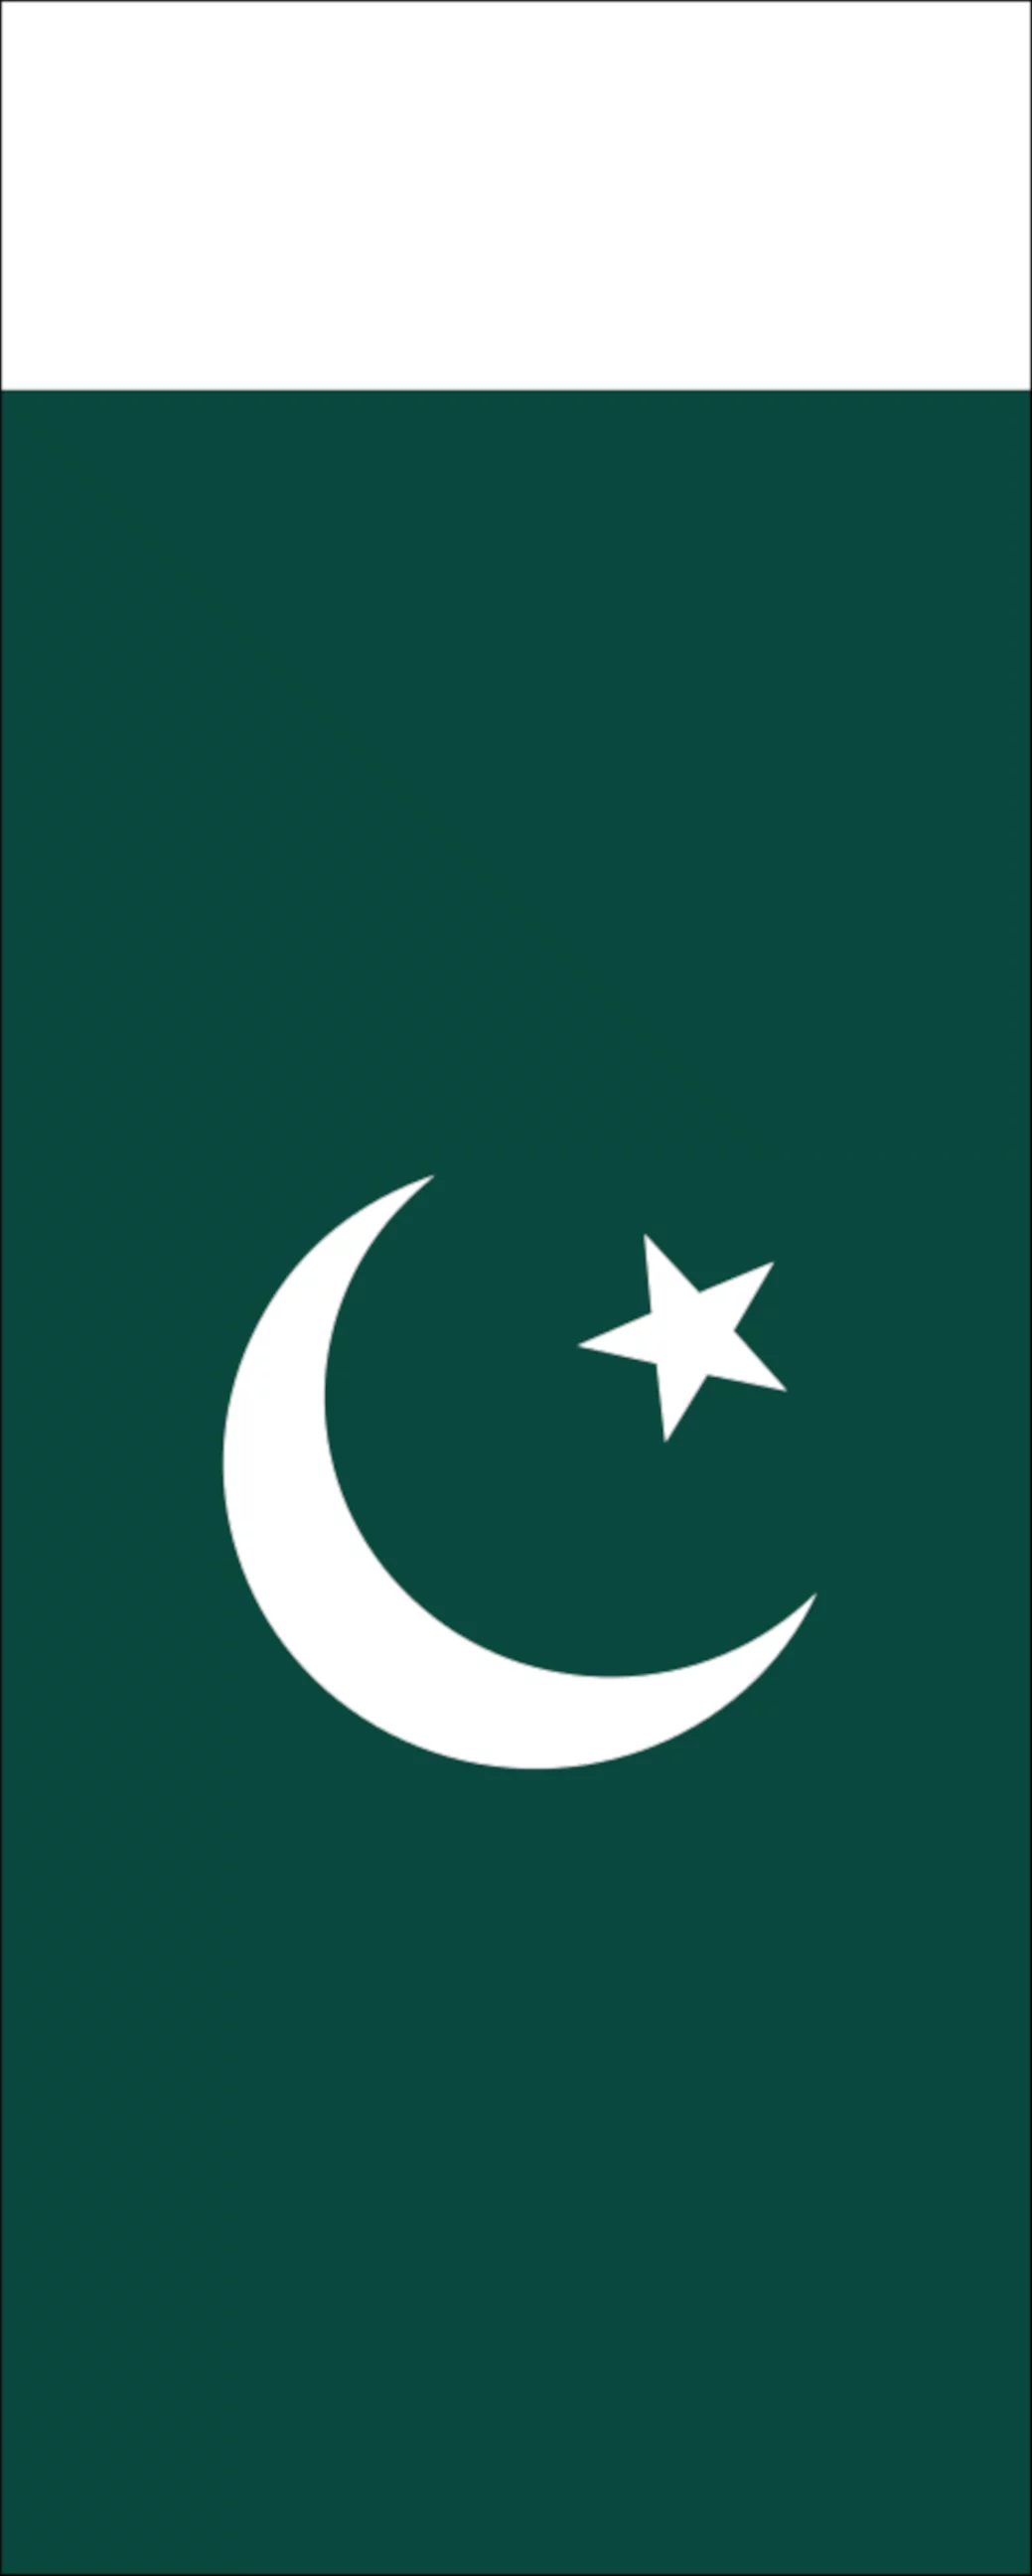 Flagge Pakistan